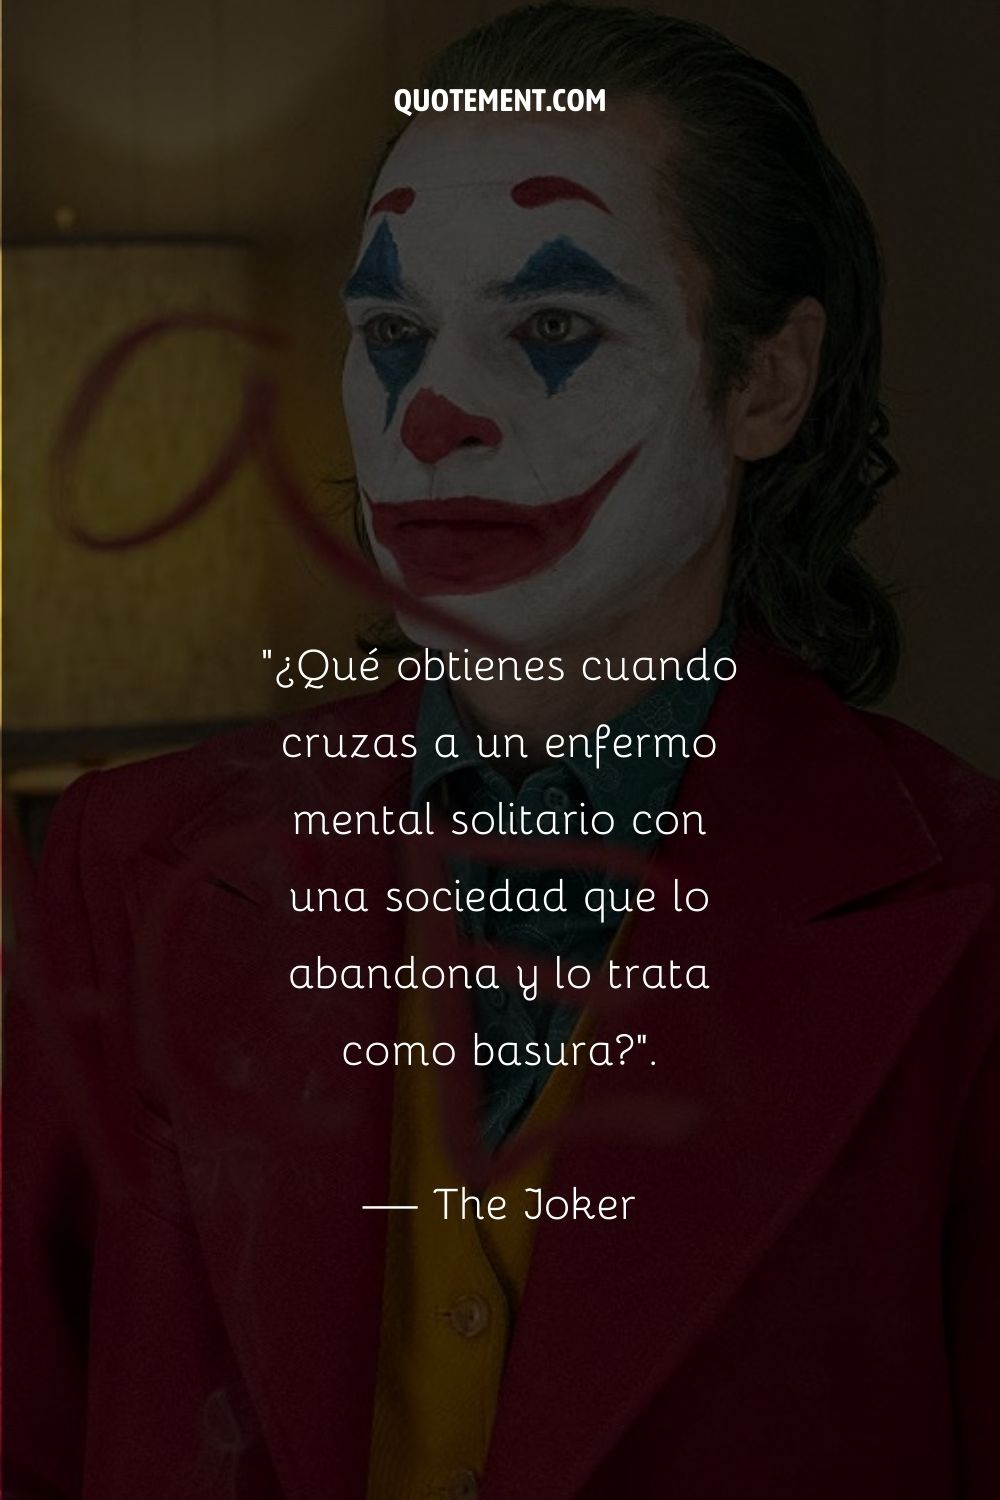 Cita célebre del Joker de la película Joker.